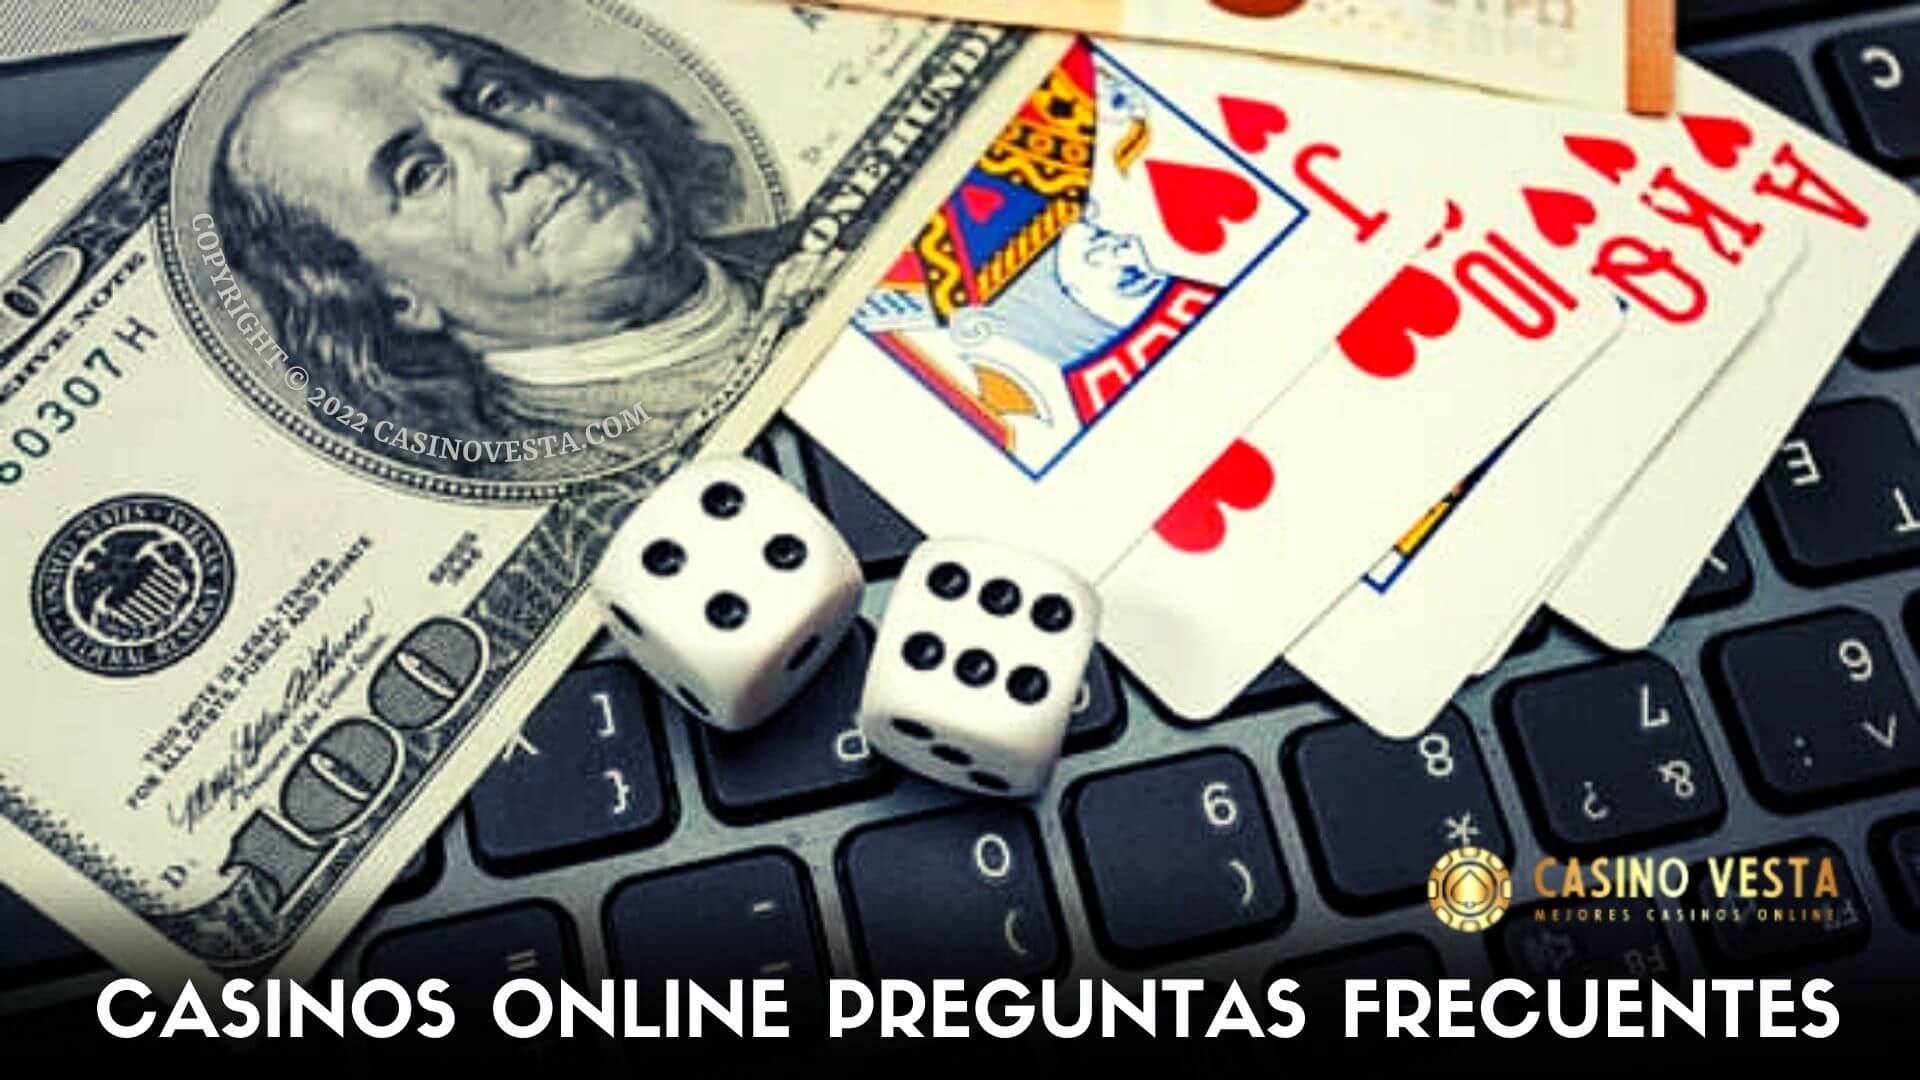 Las preguntas más frecuentes de los casinos online y las respuestas de los expertos